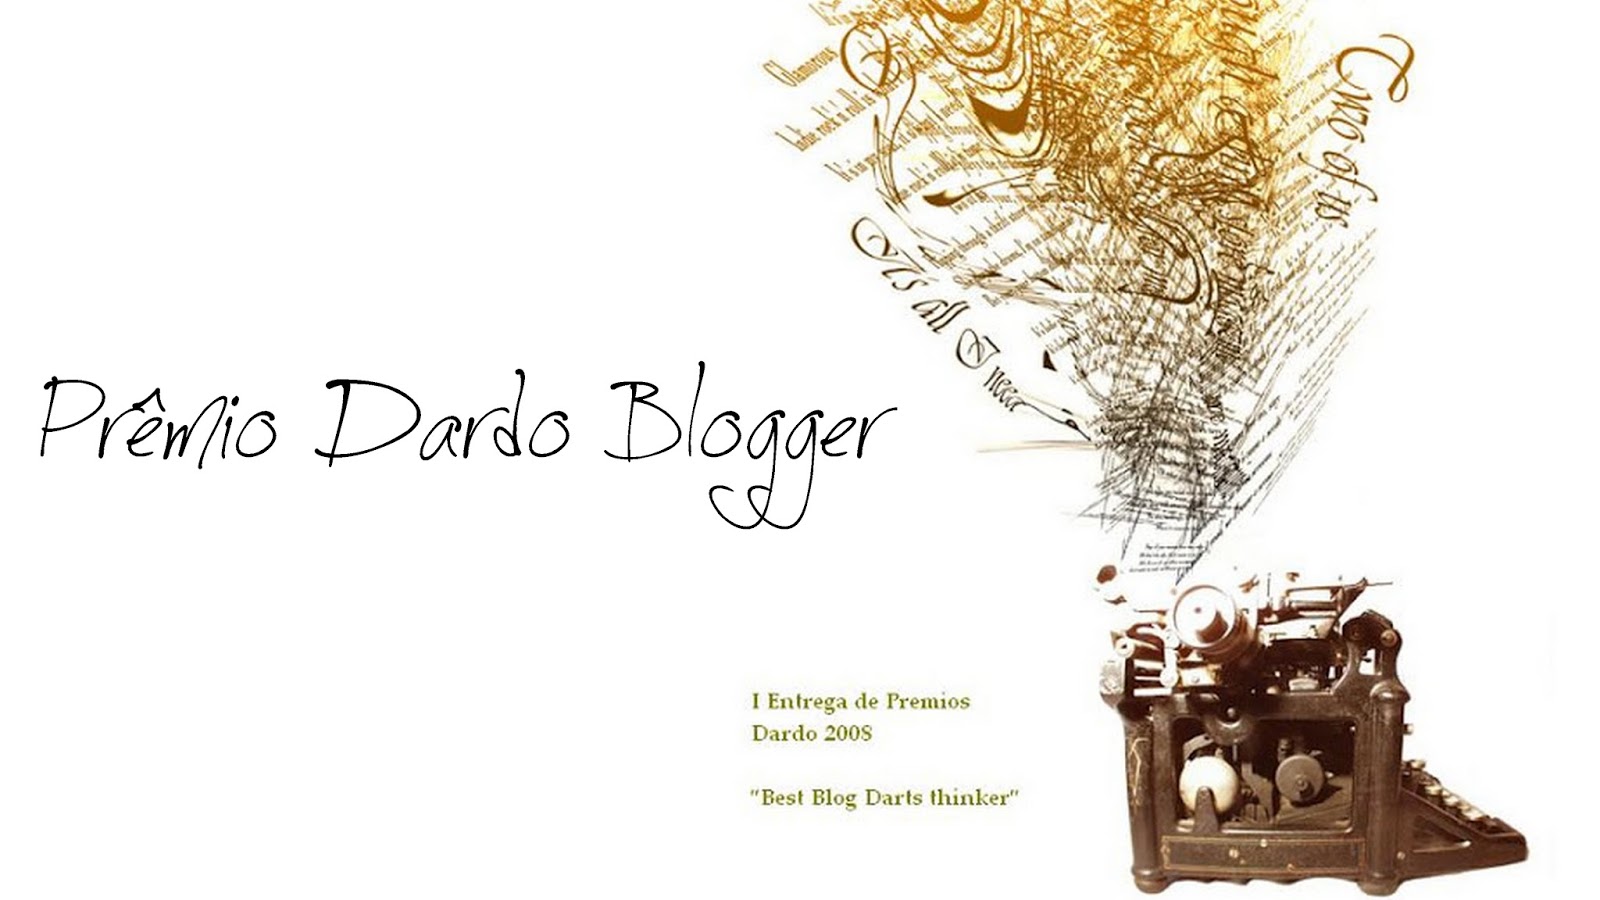 Prêmio Dardo Blogger